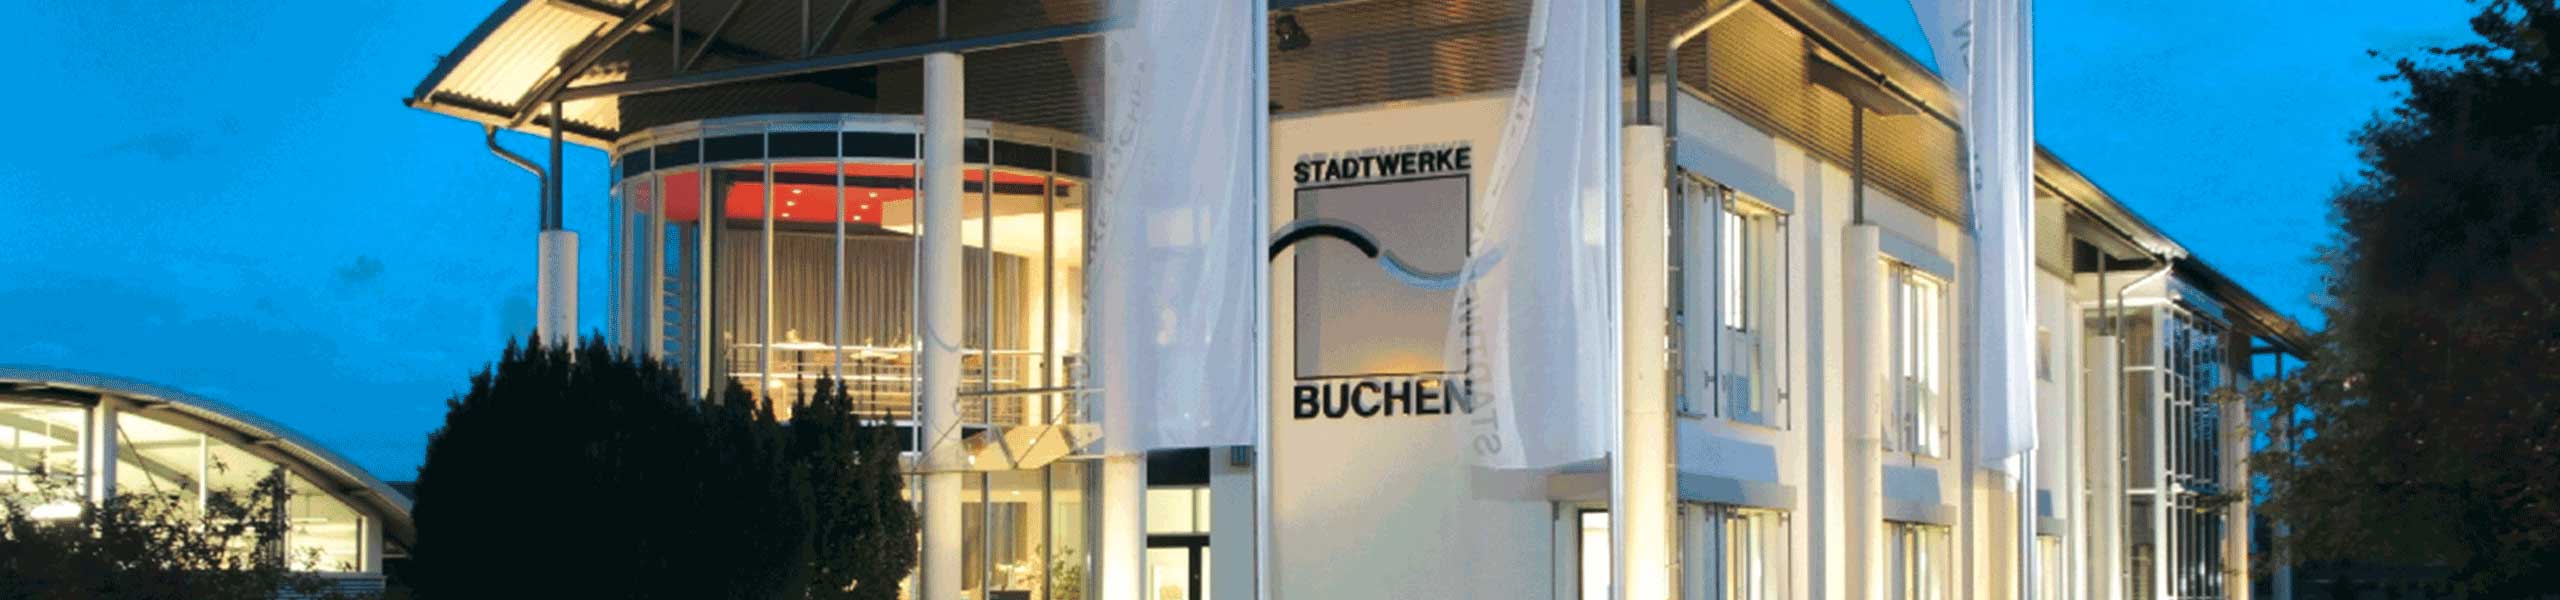 Stadtwerke Buchen GmbH & Co KG - Das Hallenbad Buchen ist am Ostersonntag und Ostermontag geschlossen!